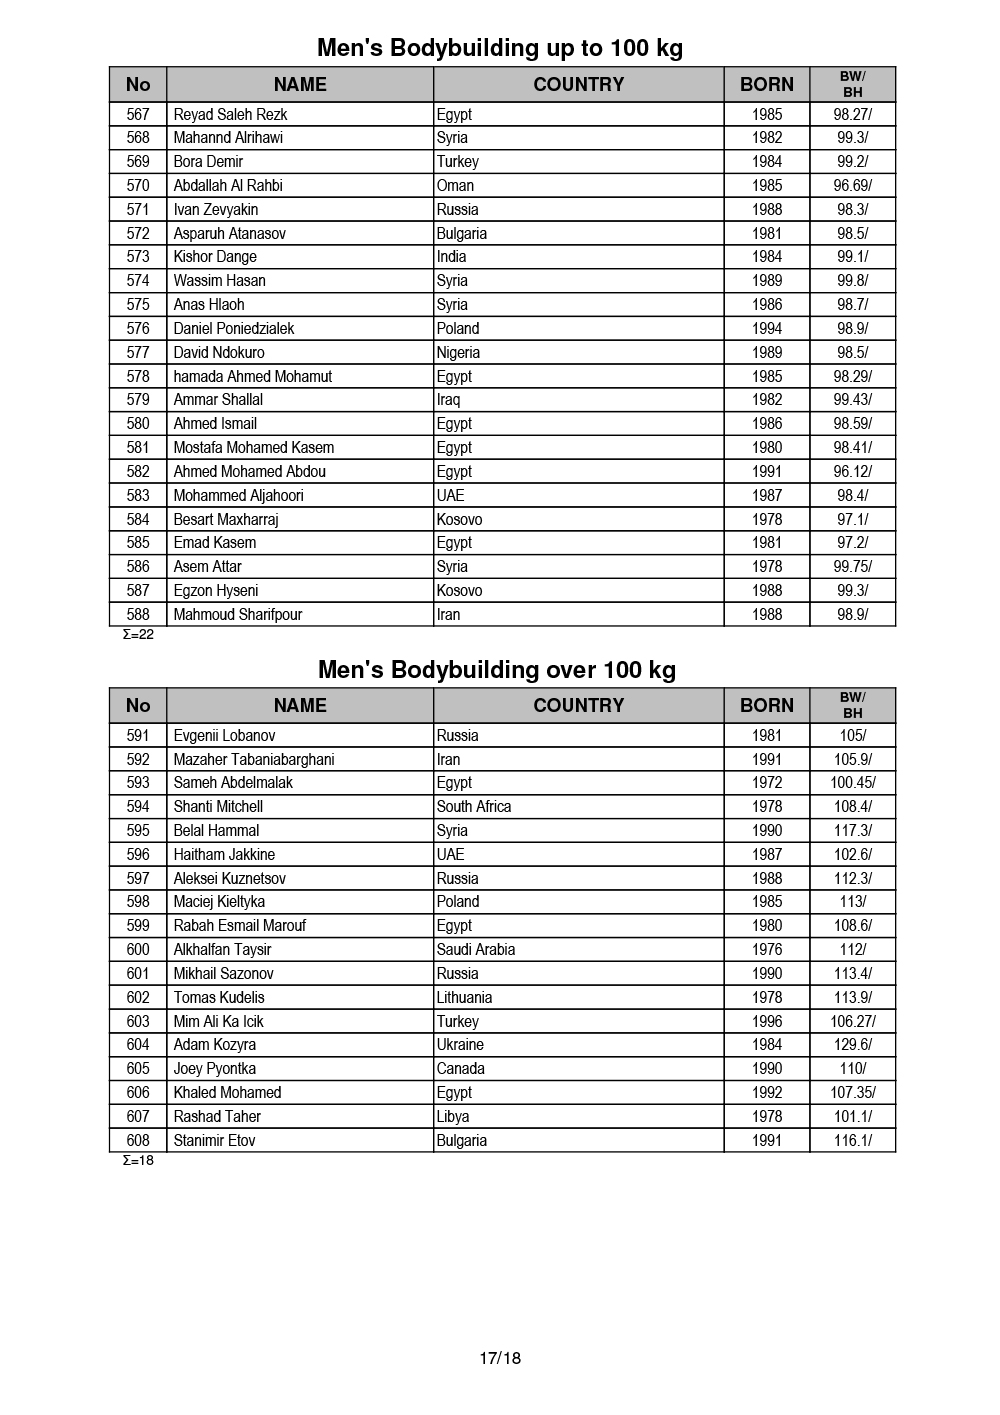 Список участников IFBB Чемпионата мира по бодибилдингу - 2019